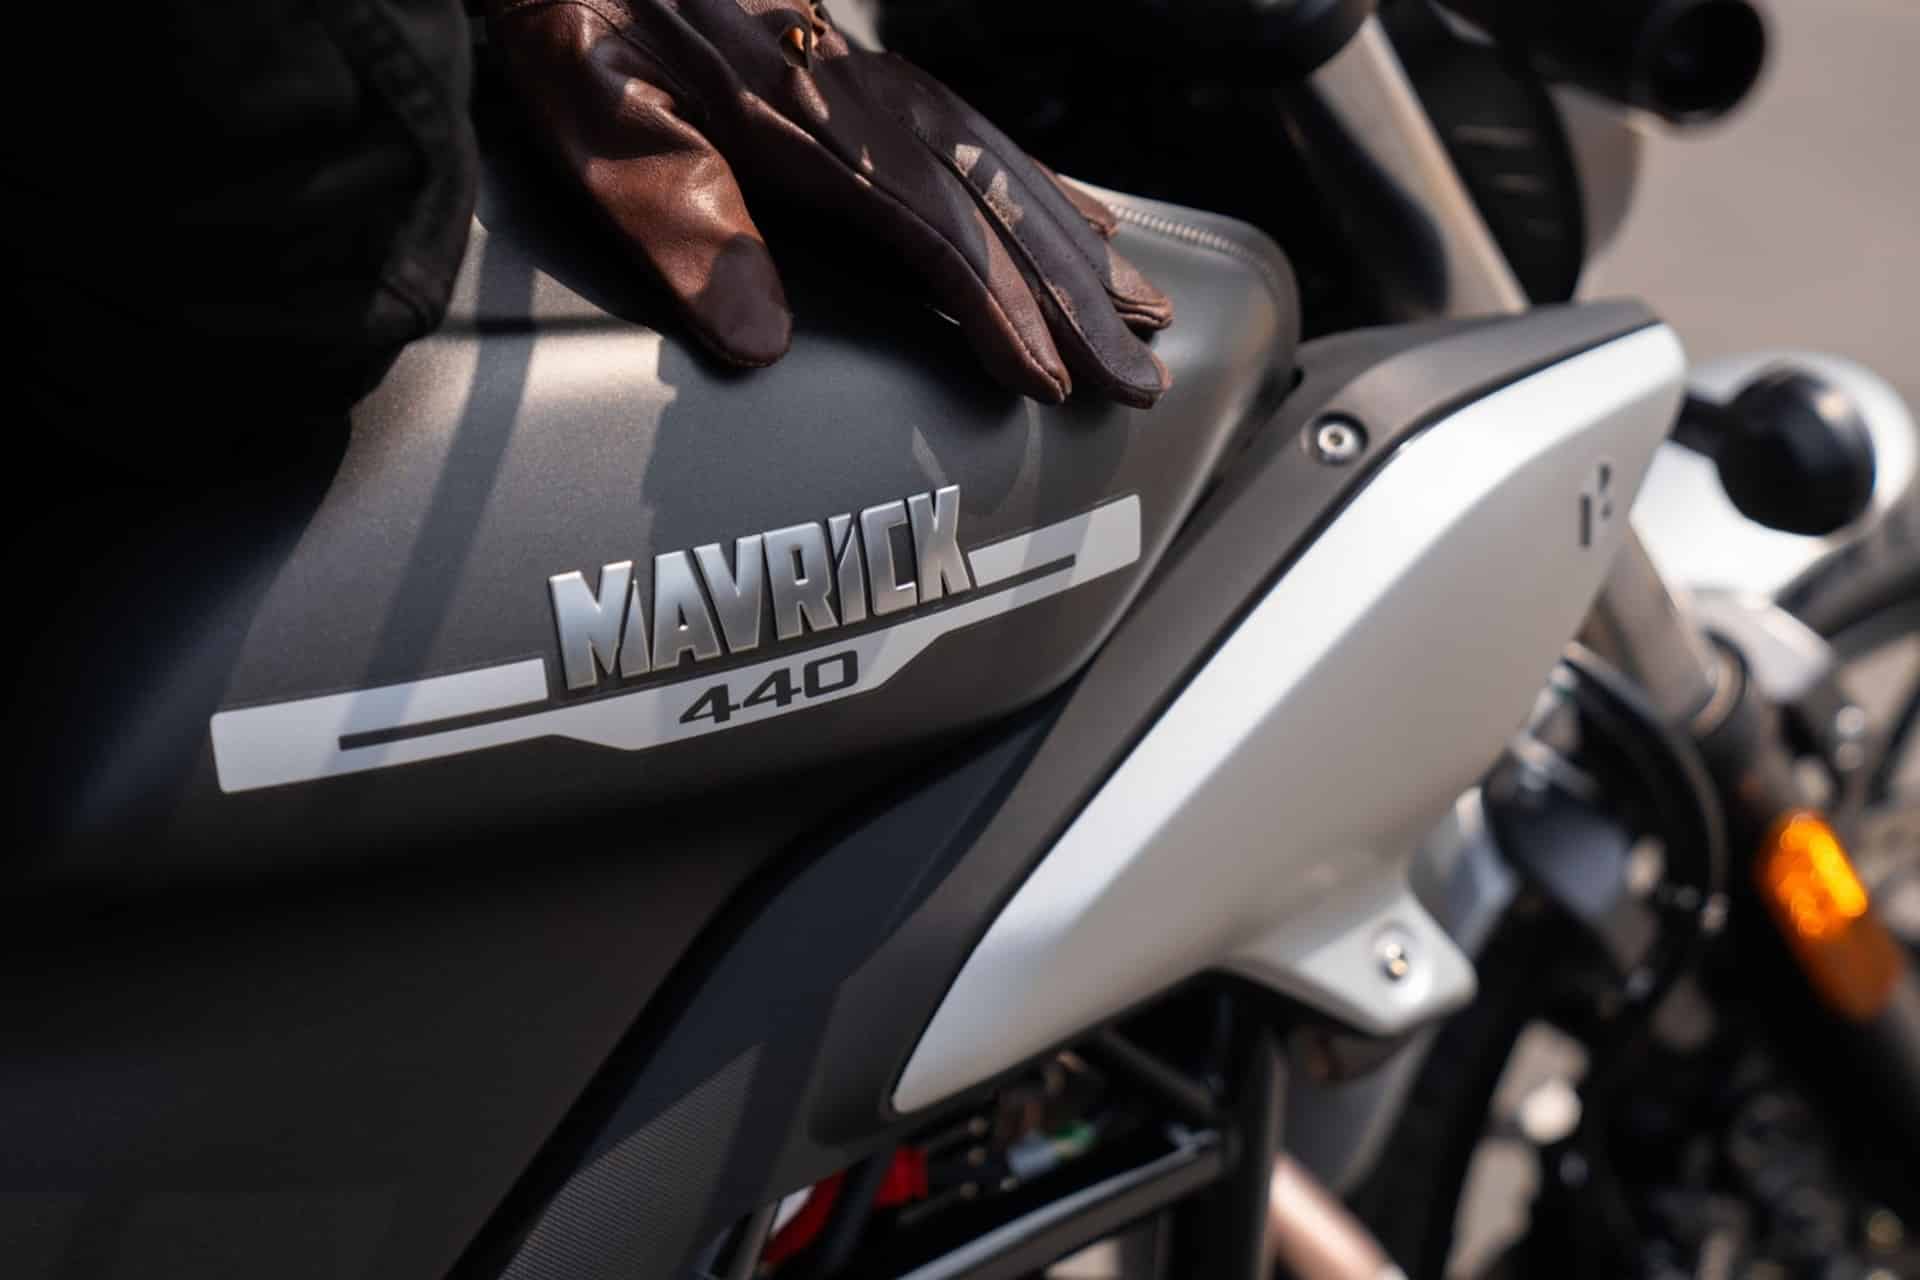 La nueva Mavrick 440 de Hero MotoCorp presentada en sociedad